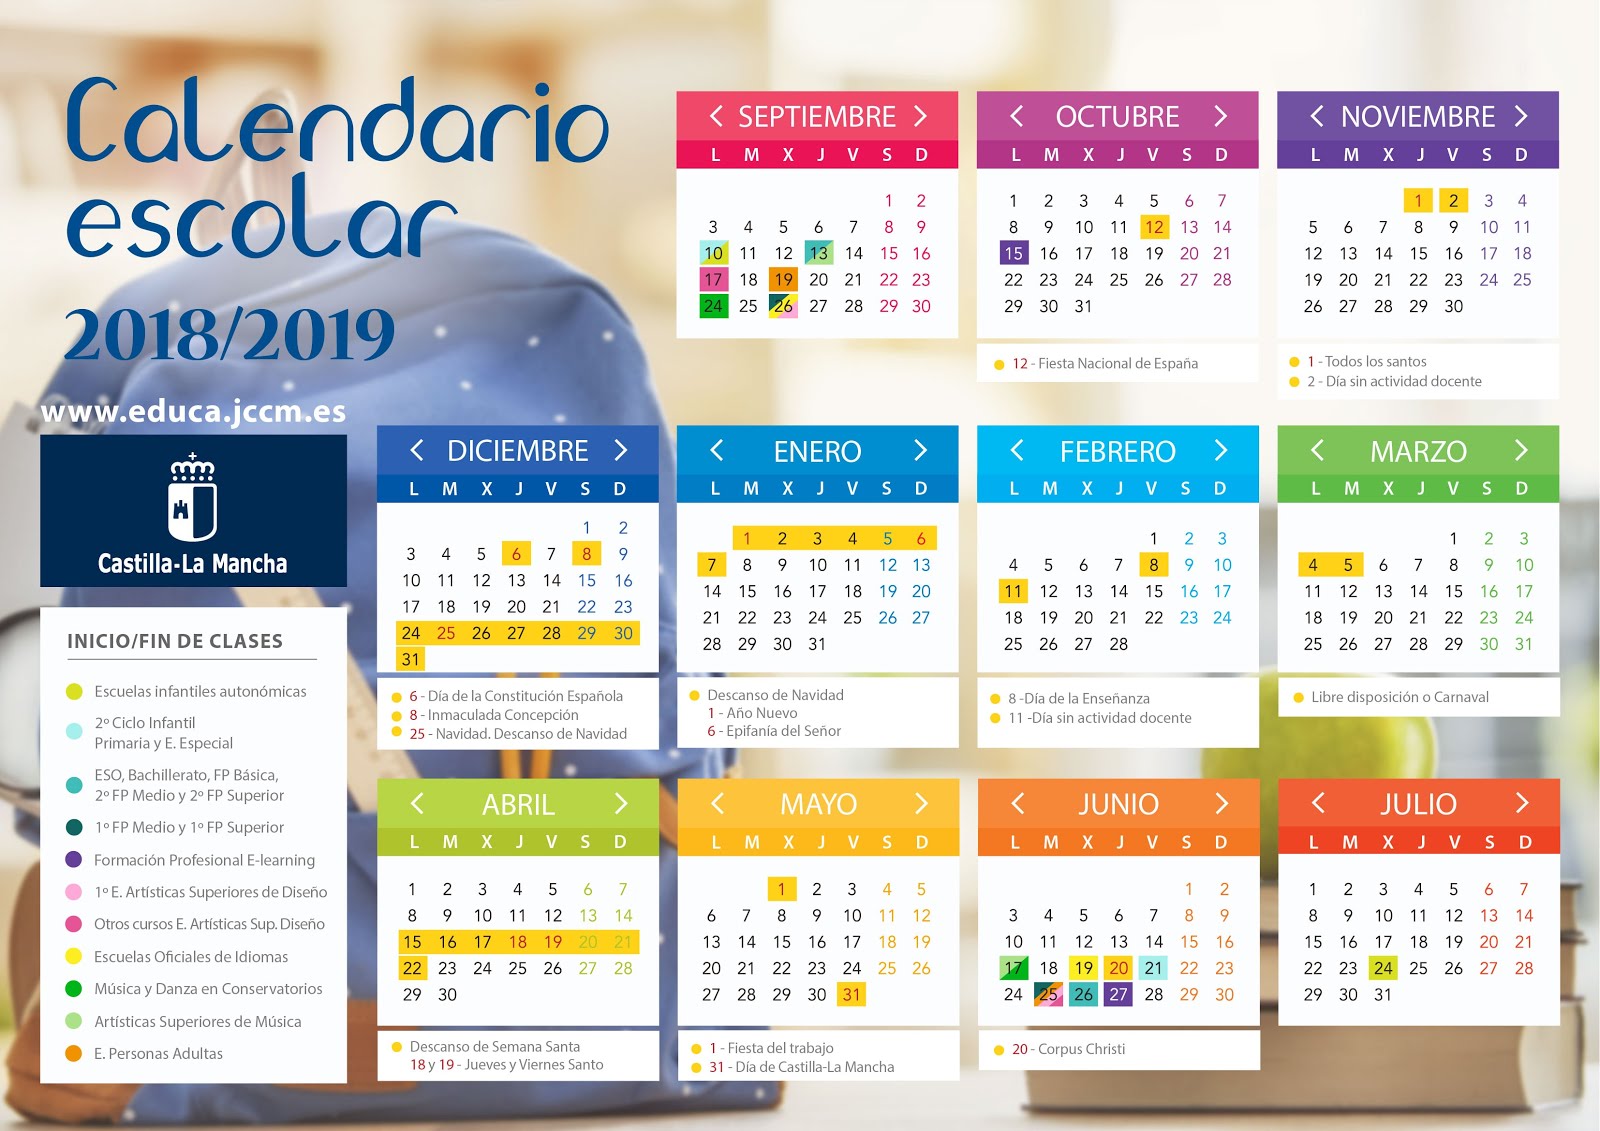 Calendario escolar curso 2018/2019